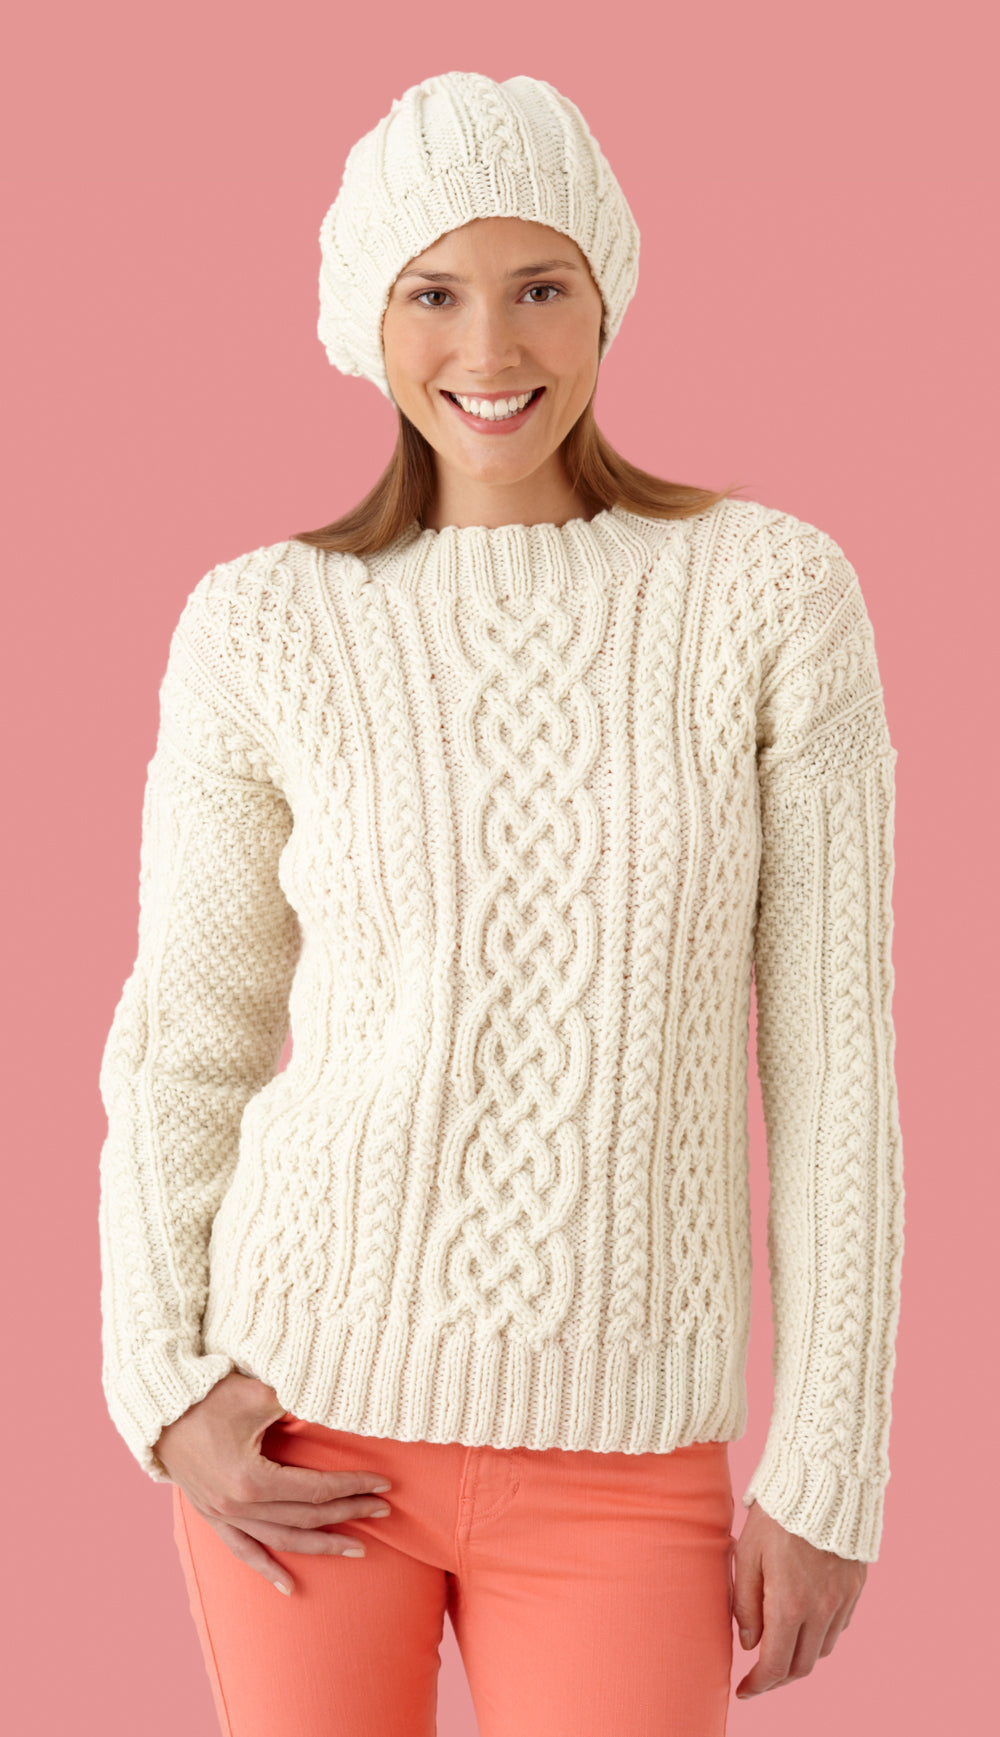 Fisherman Sweater And Hat Pattern (Knit) – Lion Brand Yarn